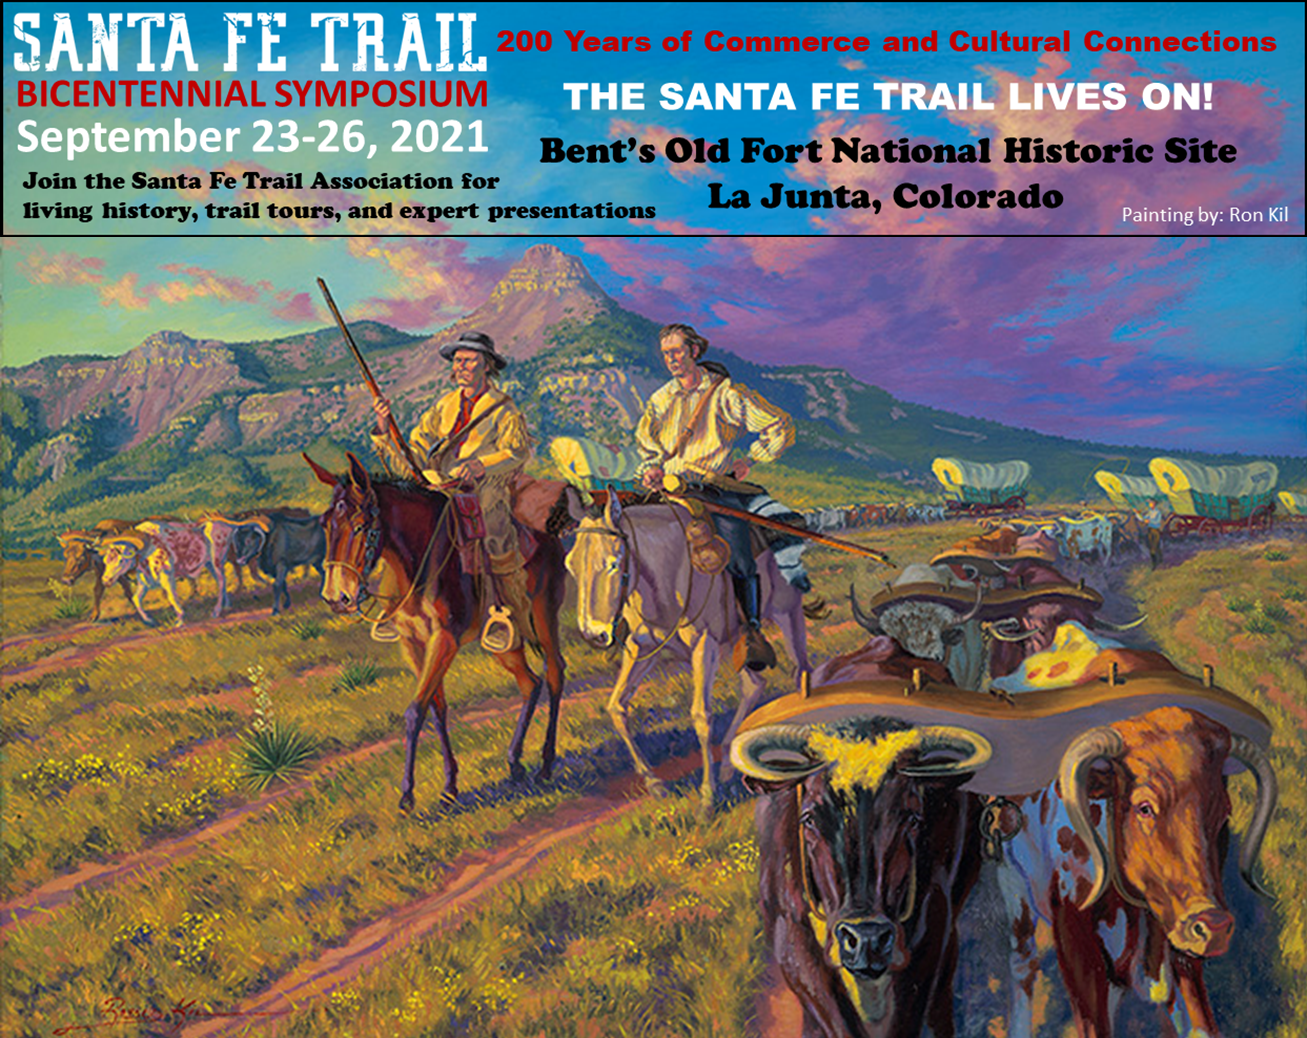 Santa Fe Trail Association Bicentennial Symposium 